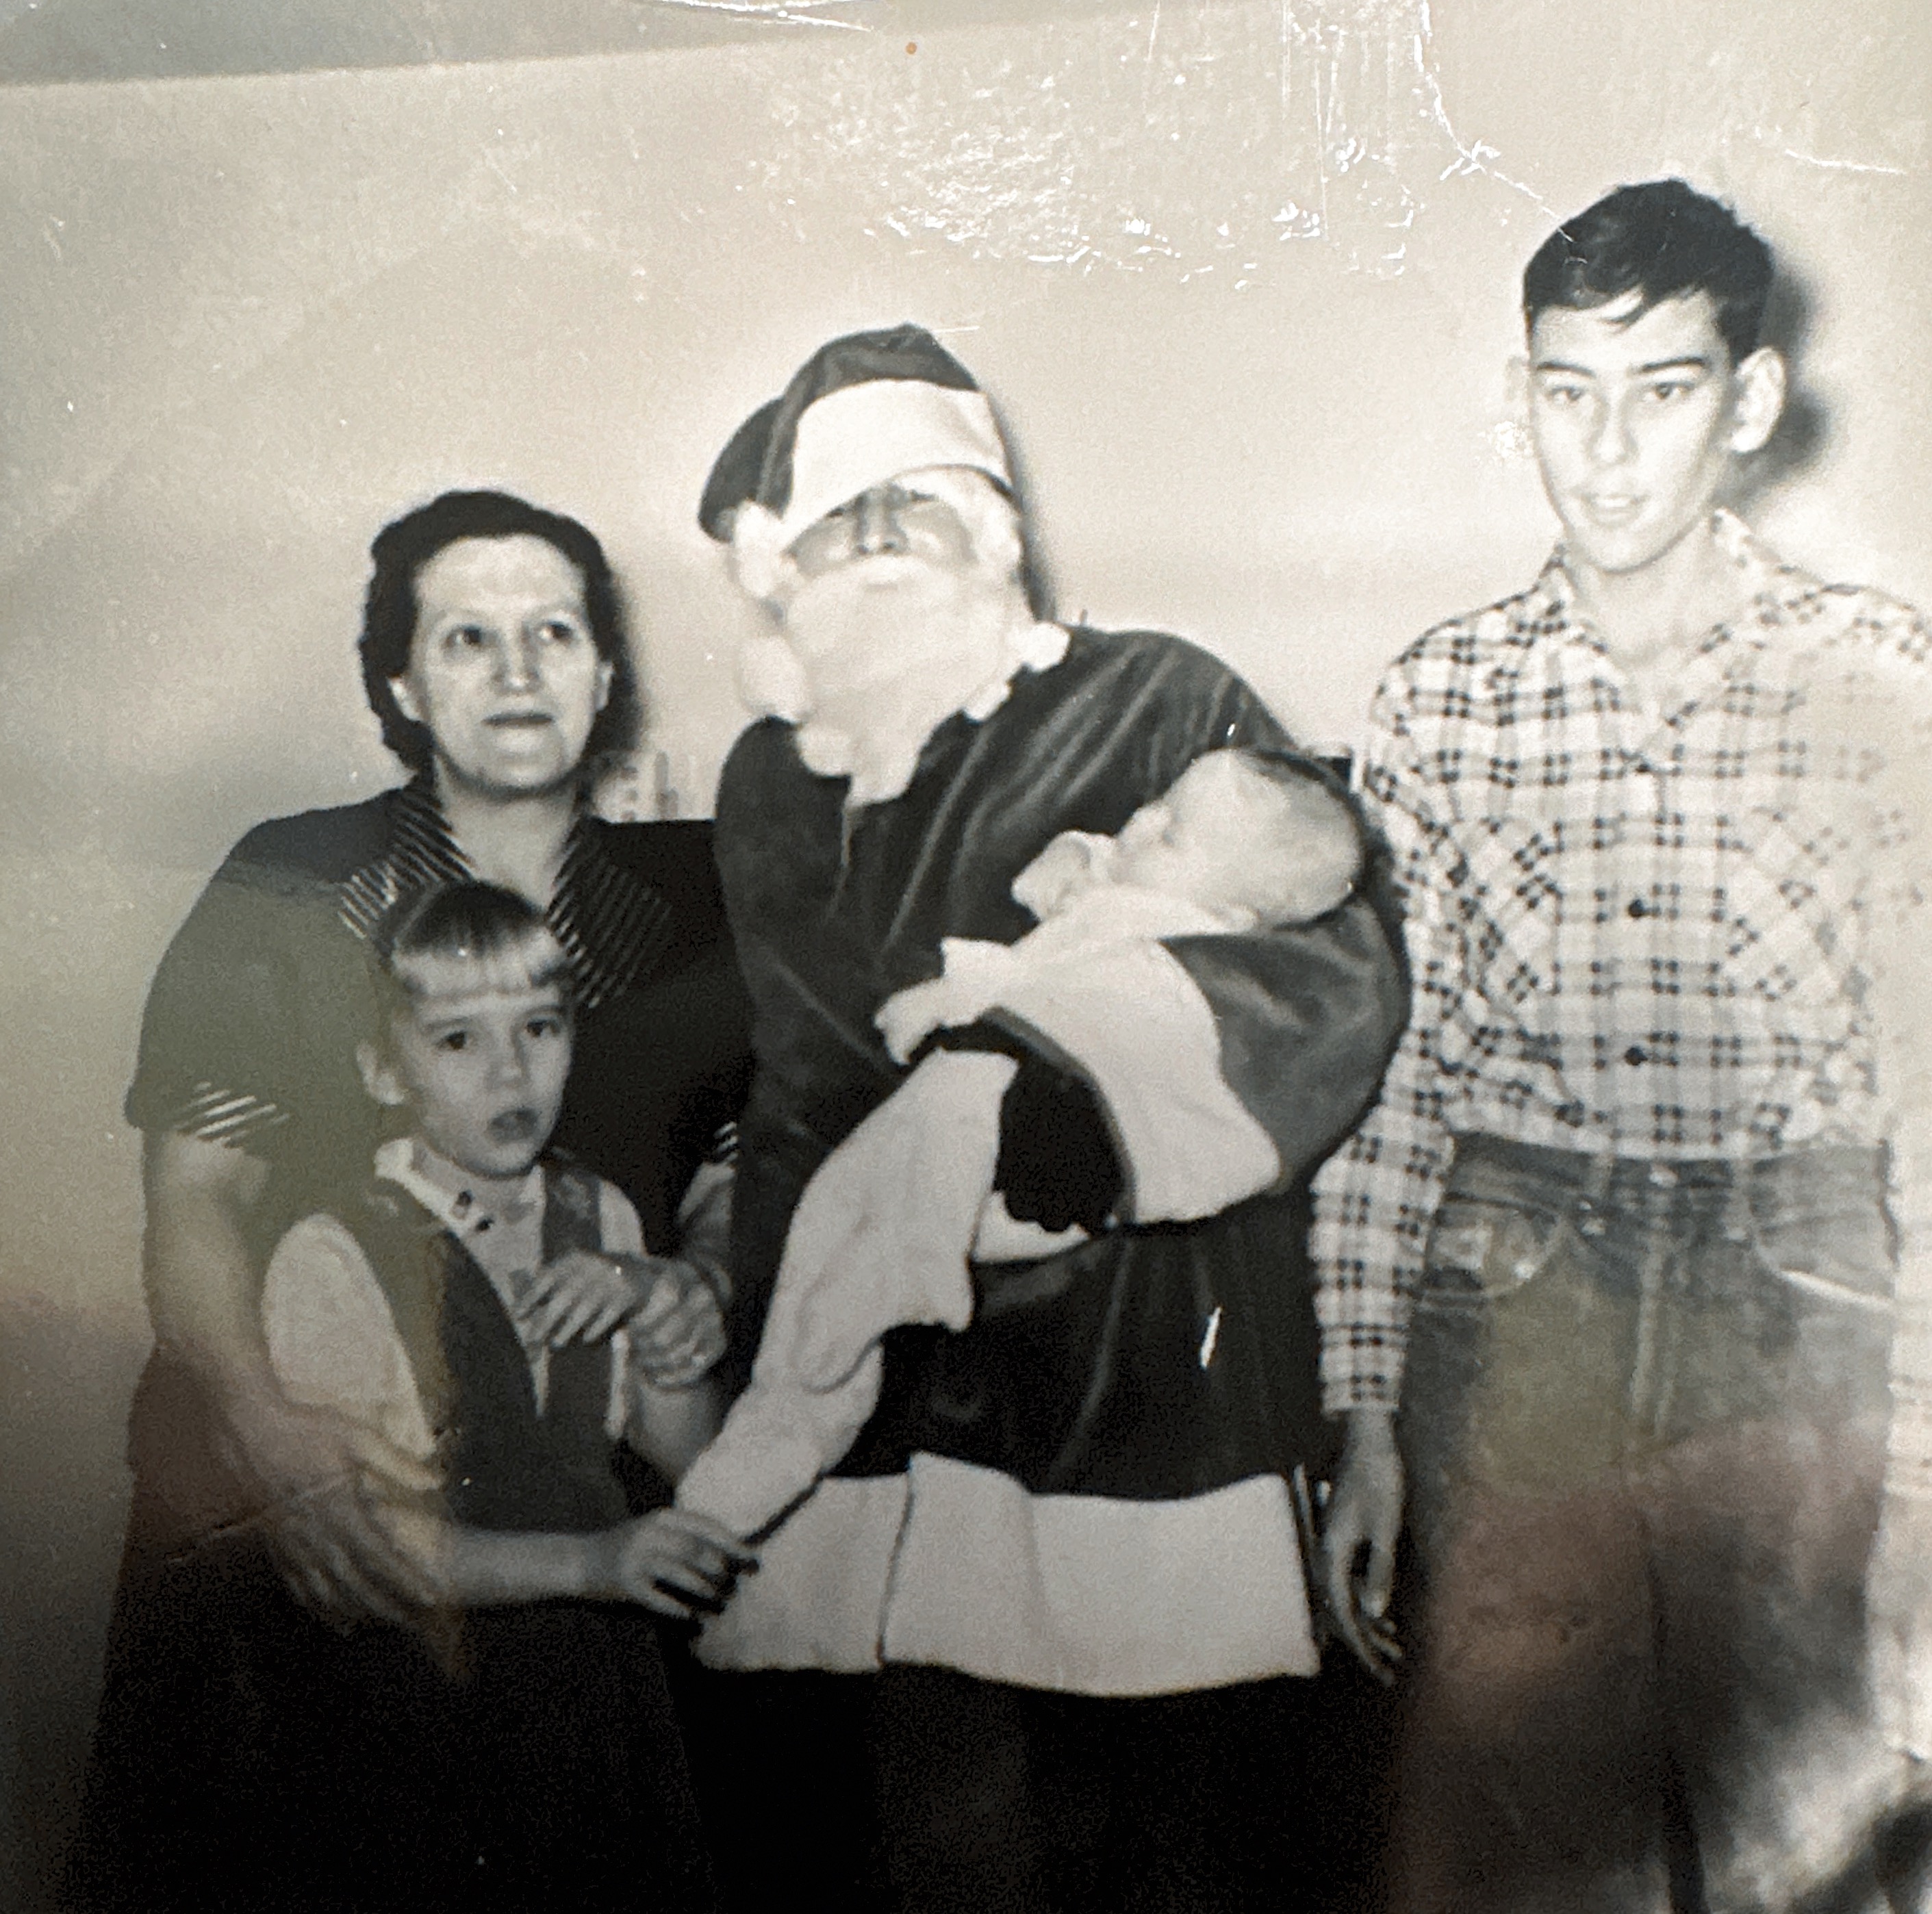 Christmas 1954